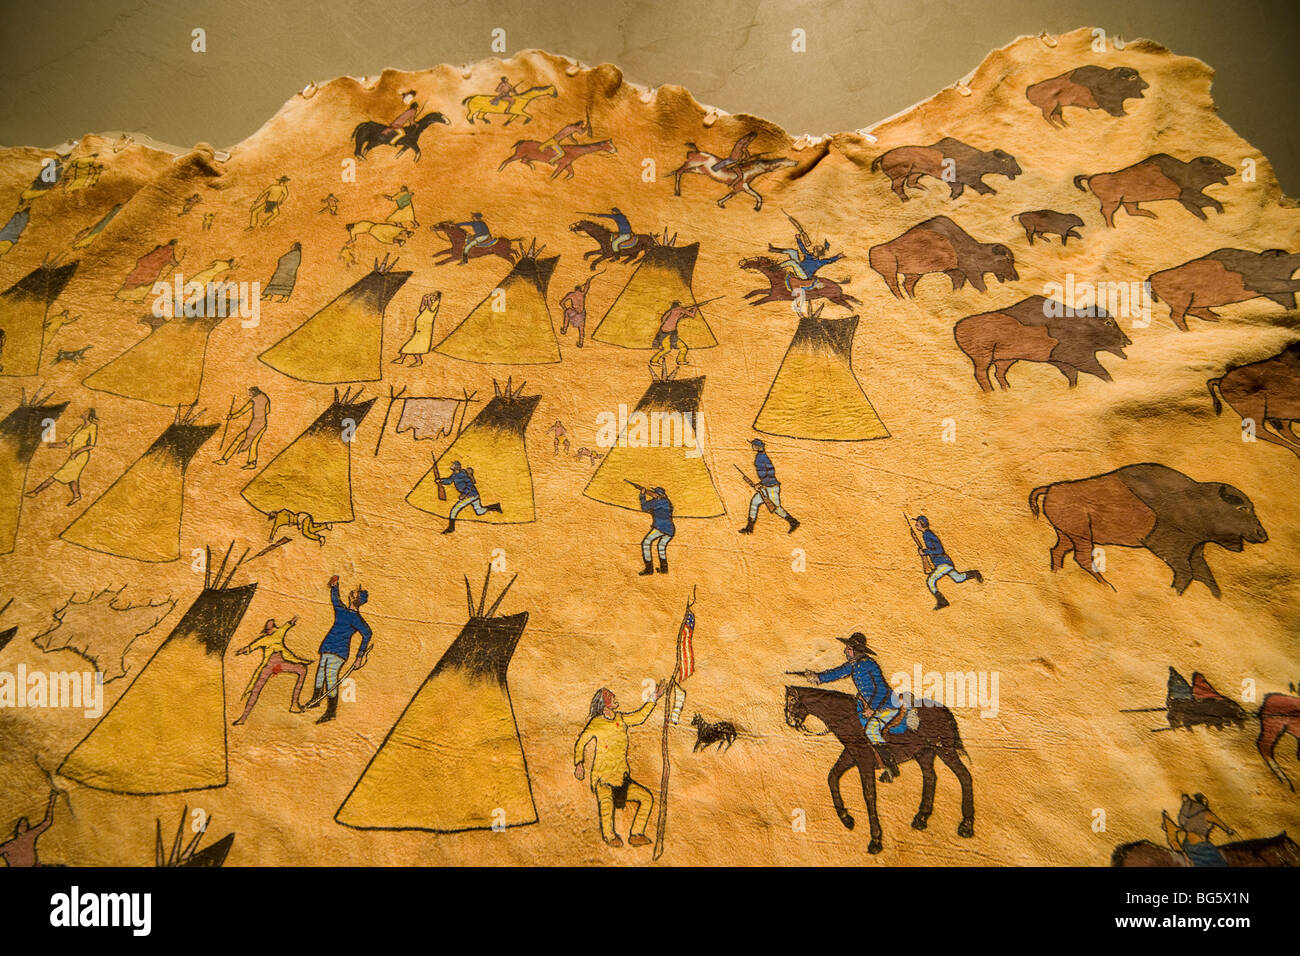 Peinture de peau de cerfs amérindiens du massacre de Sand Creek Colonel John Chivington 700 hommes tués mutilés 133 Cheyennes amicaux, principalement des femmes enfants Banque D'Images